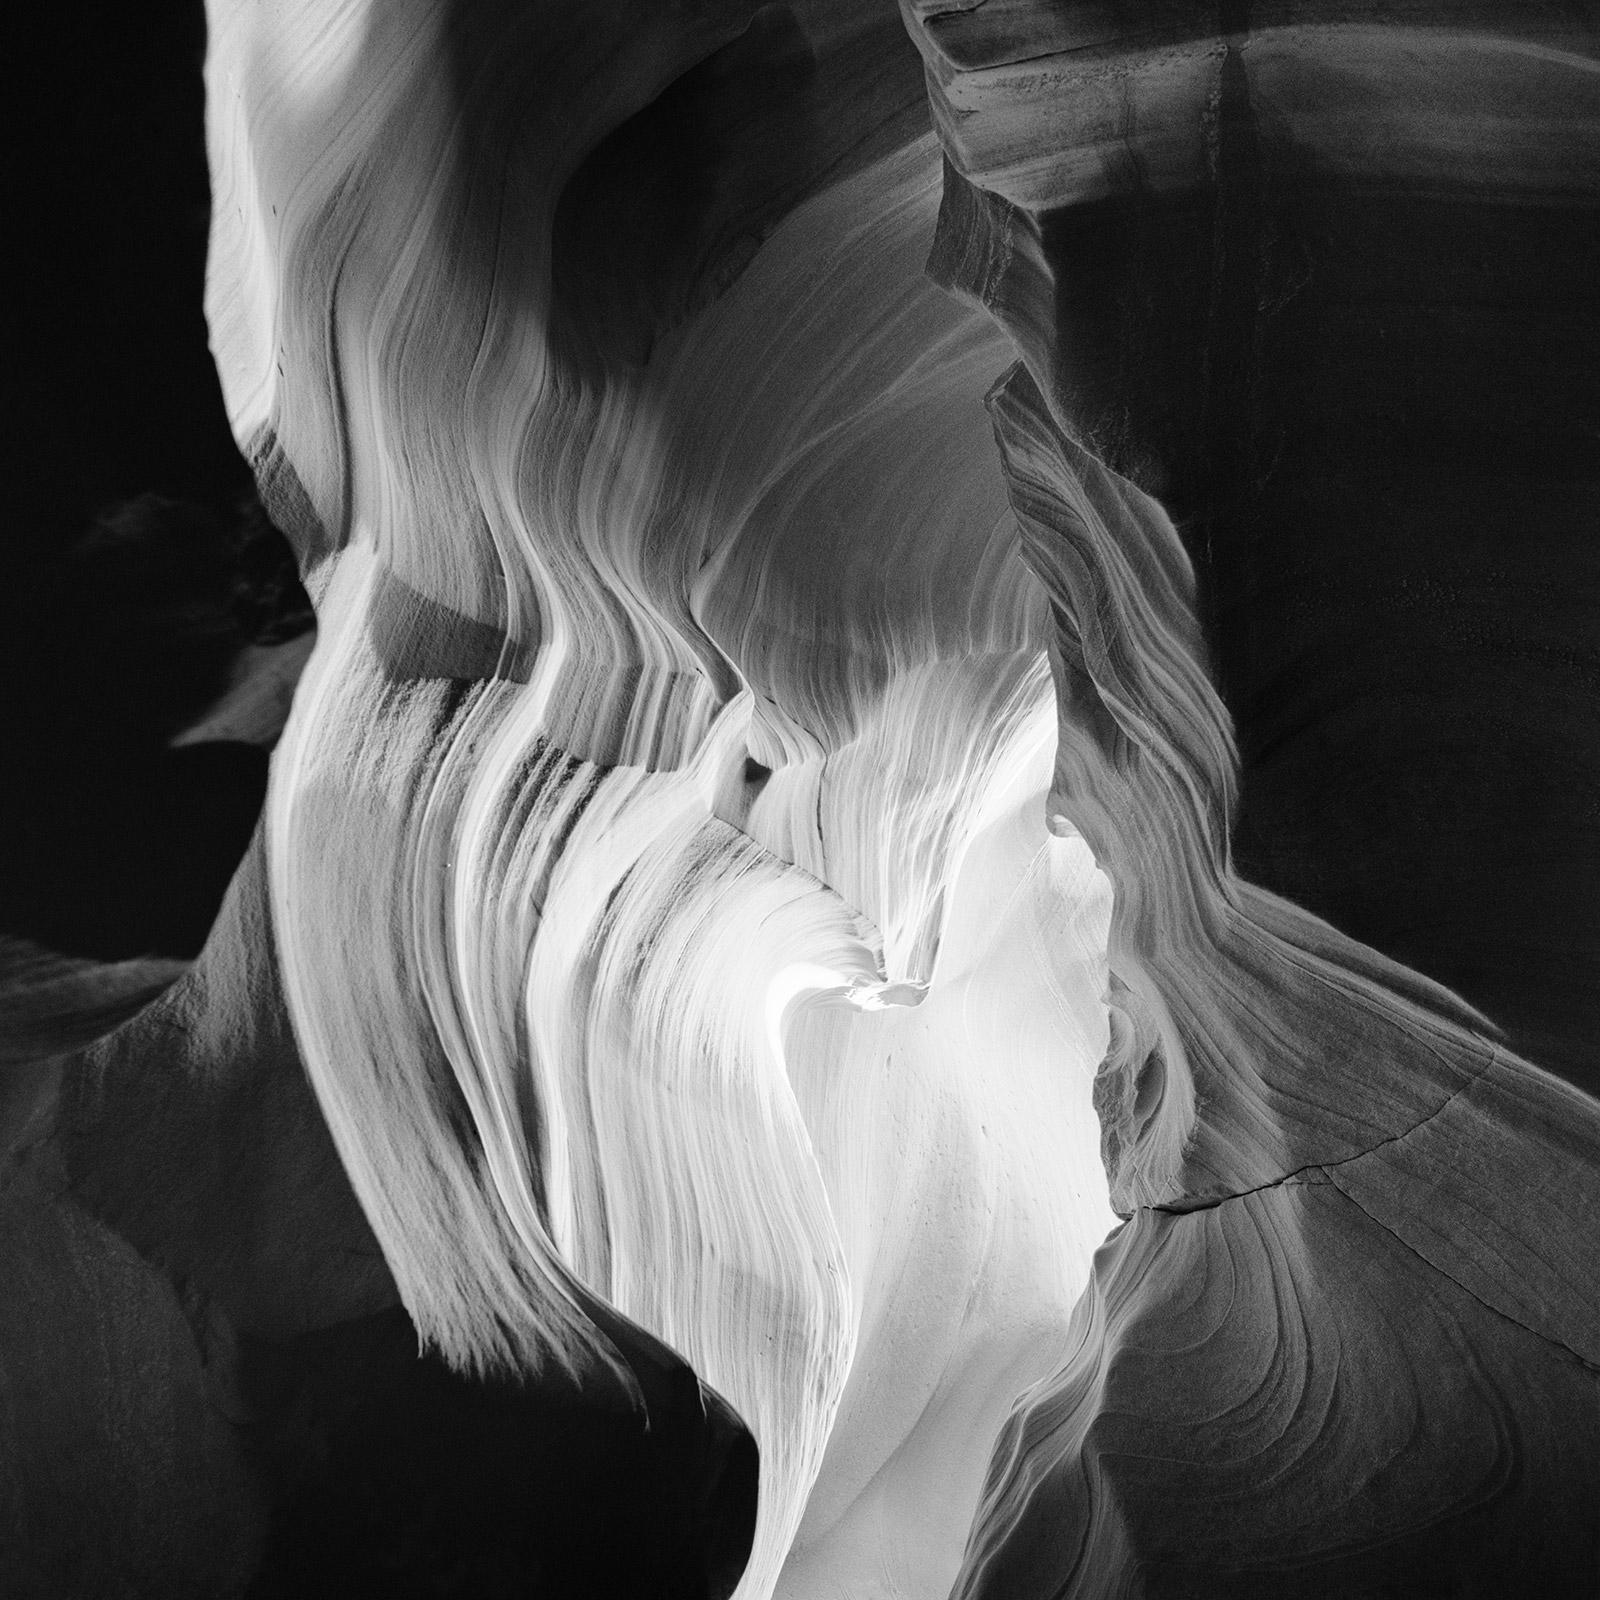 Gerald Berghammer, Ina Forstinger Landscape Photograph - Heart, Antelope Canyon, Arizona, USA, black & white photography, large landscape